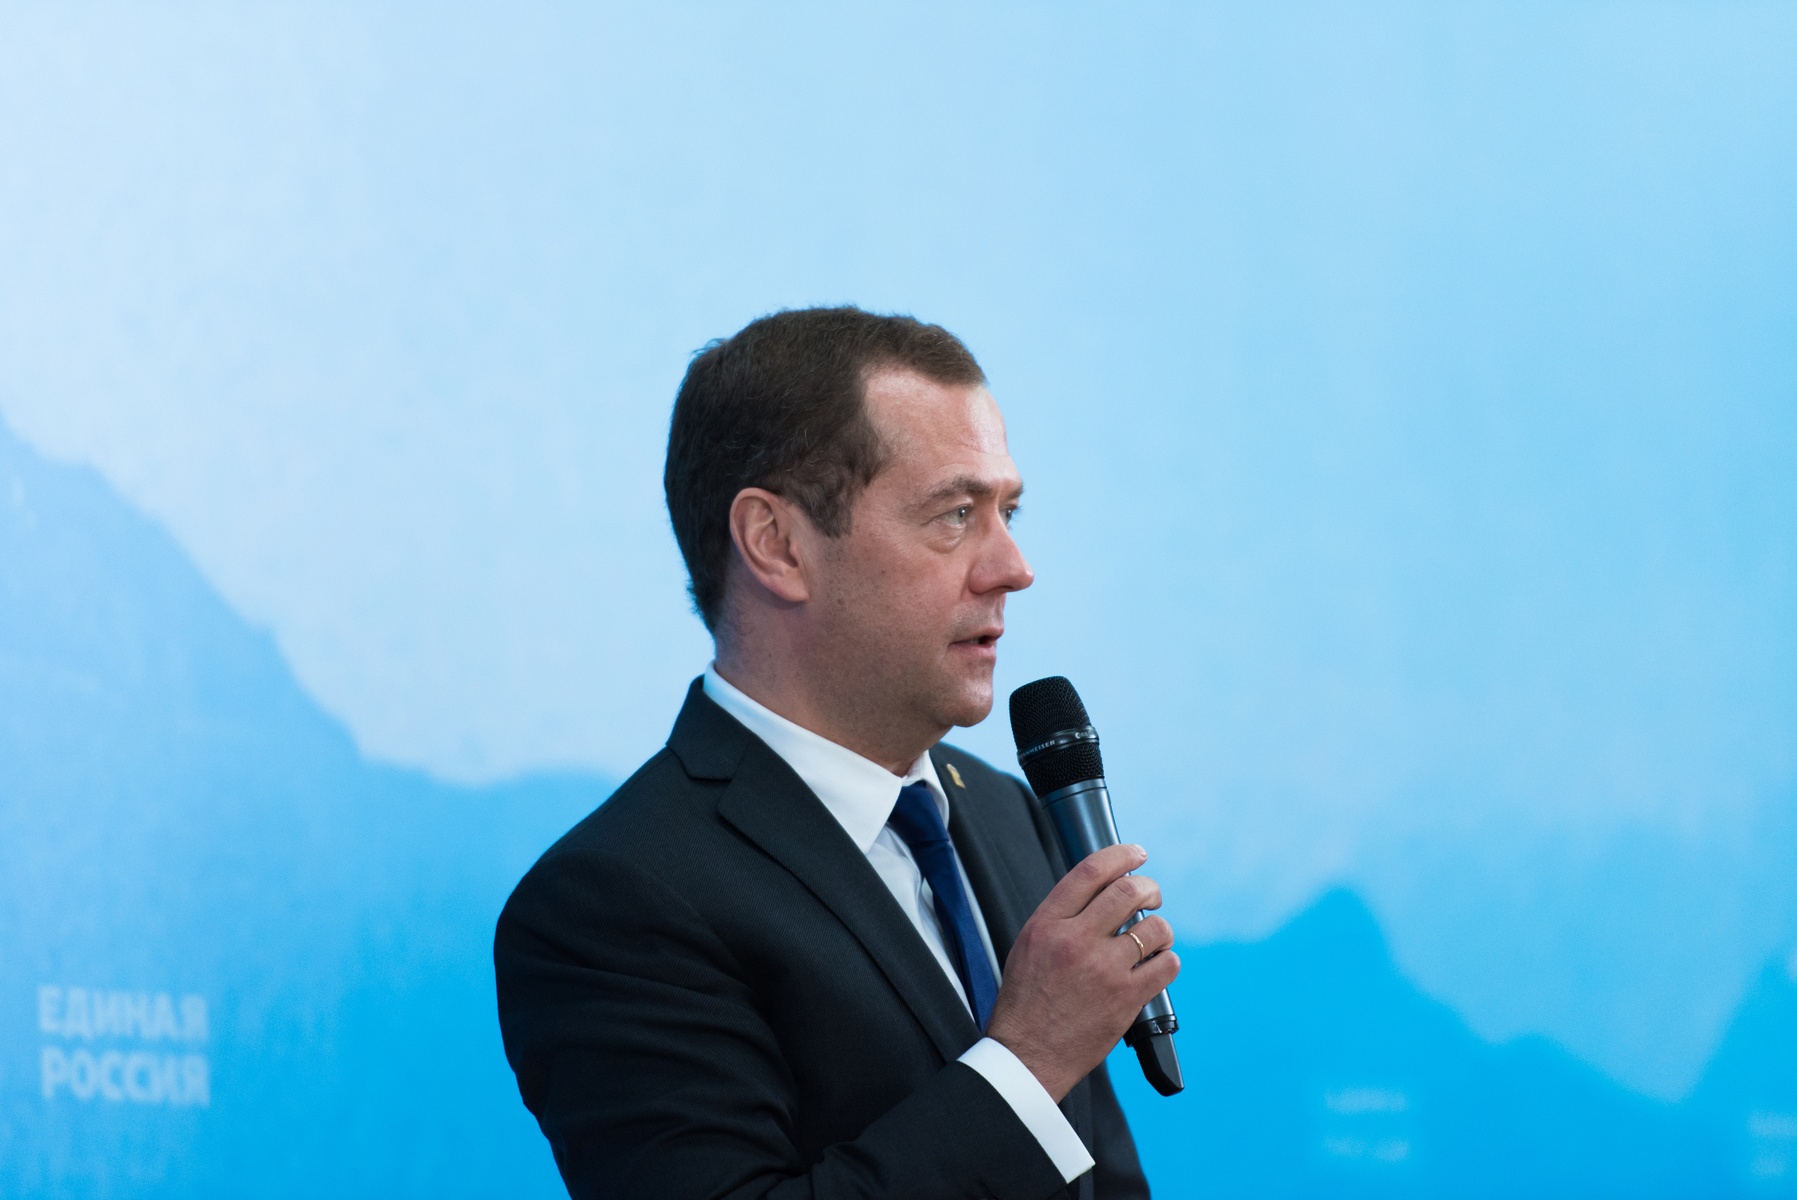 Встреча Председателя партии «Единая Россия» Дмитрия Медведева с победителями предварительного голосования в Республике Северная Осетия – Алания